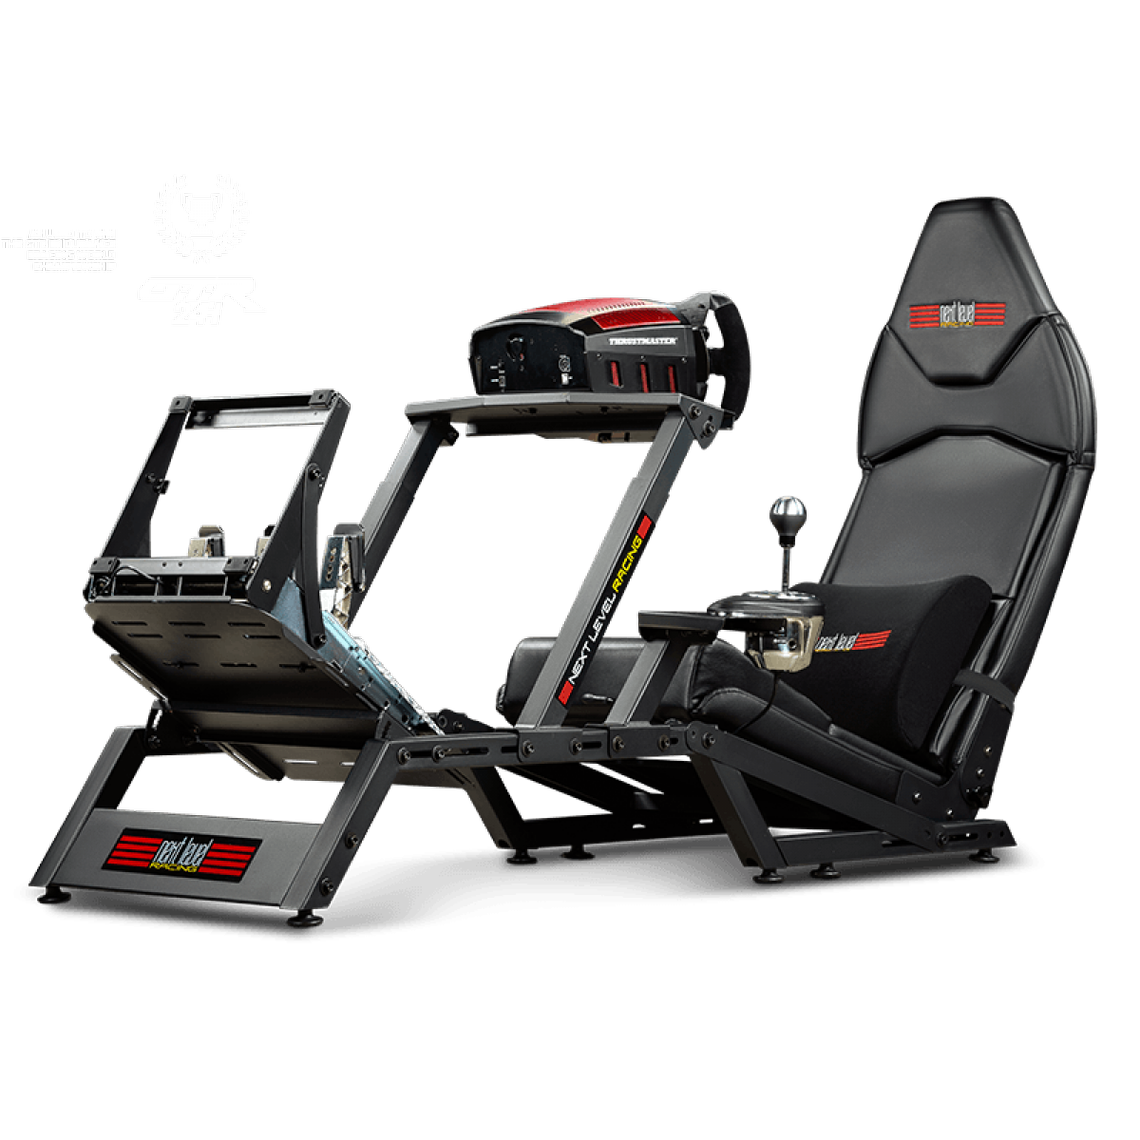 Manette PS4 Next Level Racing Next Level Racing - Cockpit FGT - siege simulateur